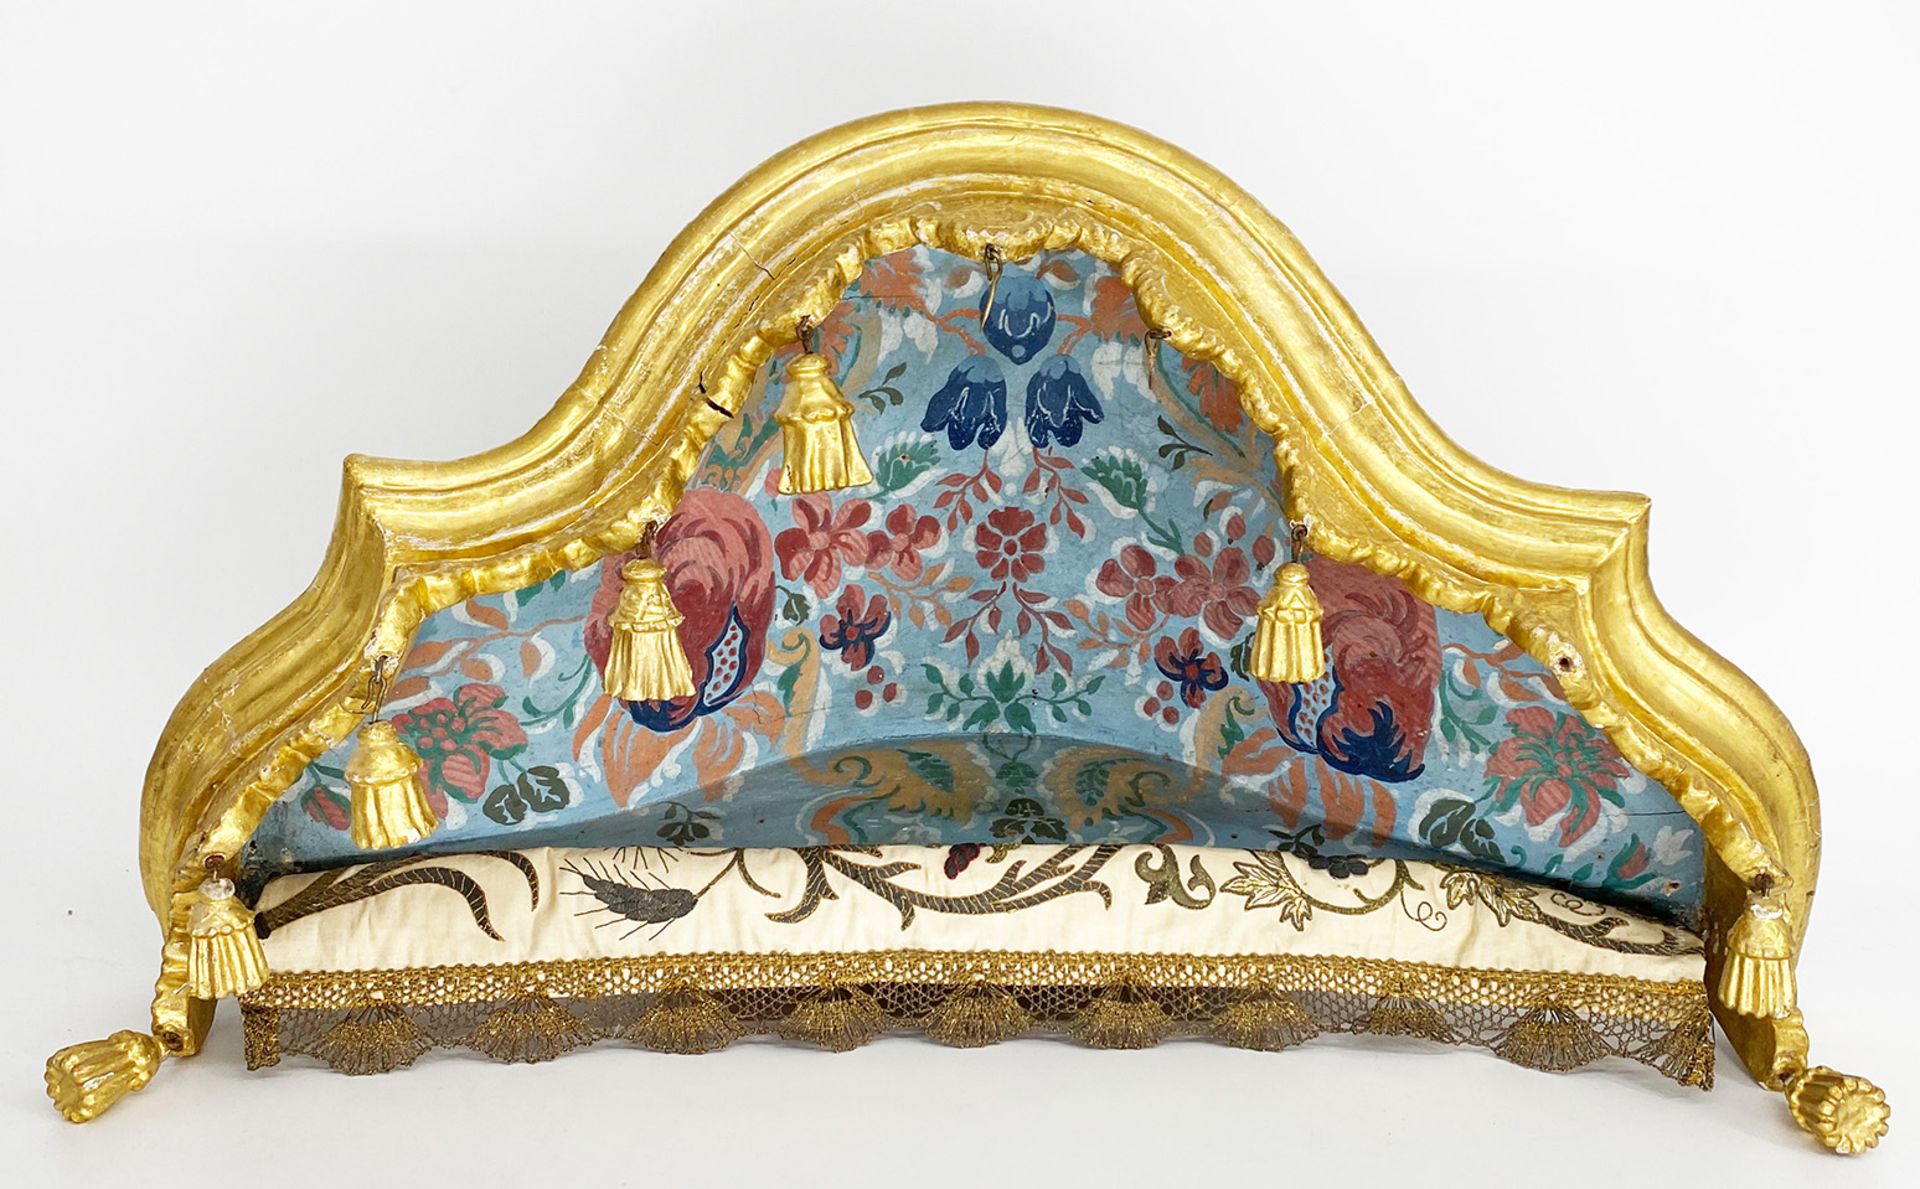 Barocker Baldachin mit geschnitztem Lambrequin sowie kleinen hängenden Quasten, Holz, farbig und